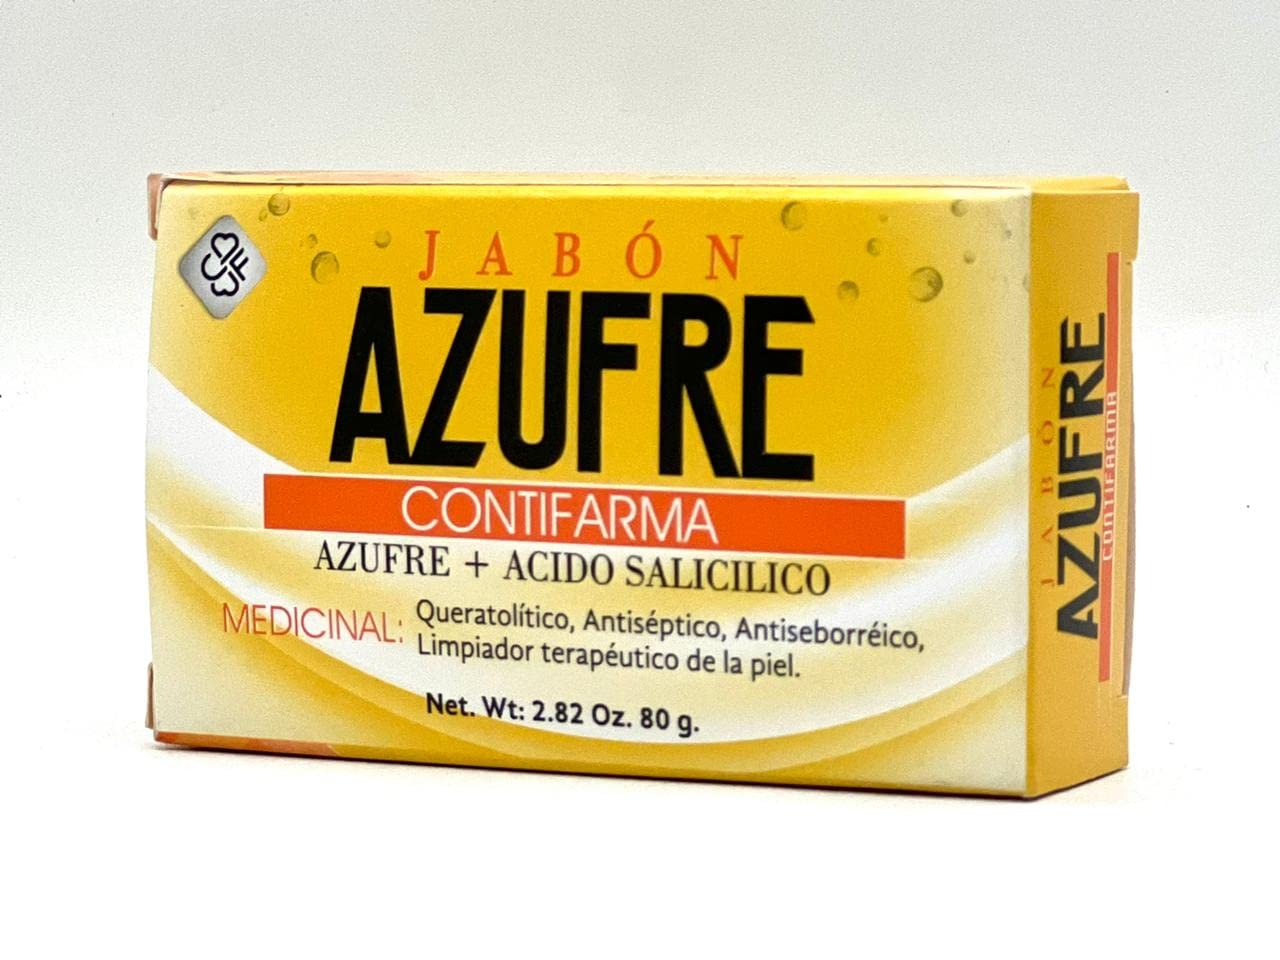 AZUFRE + ACIDO SALICILICO, jabón, tratamiento para el acné, jabón de  azufre, para acné, con ácido salicílico, paquete de 1